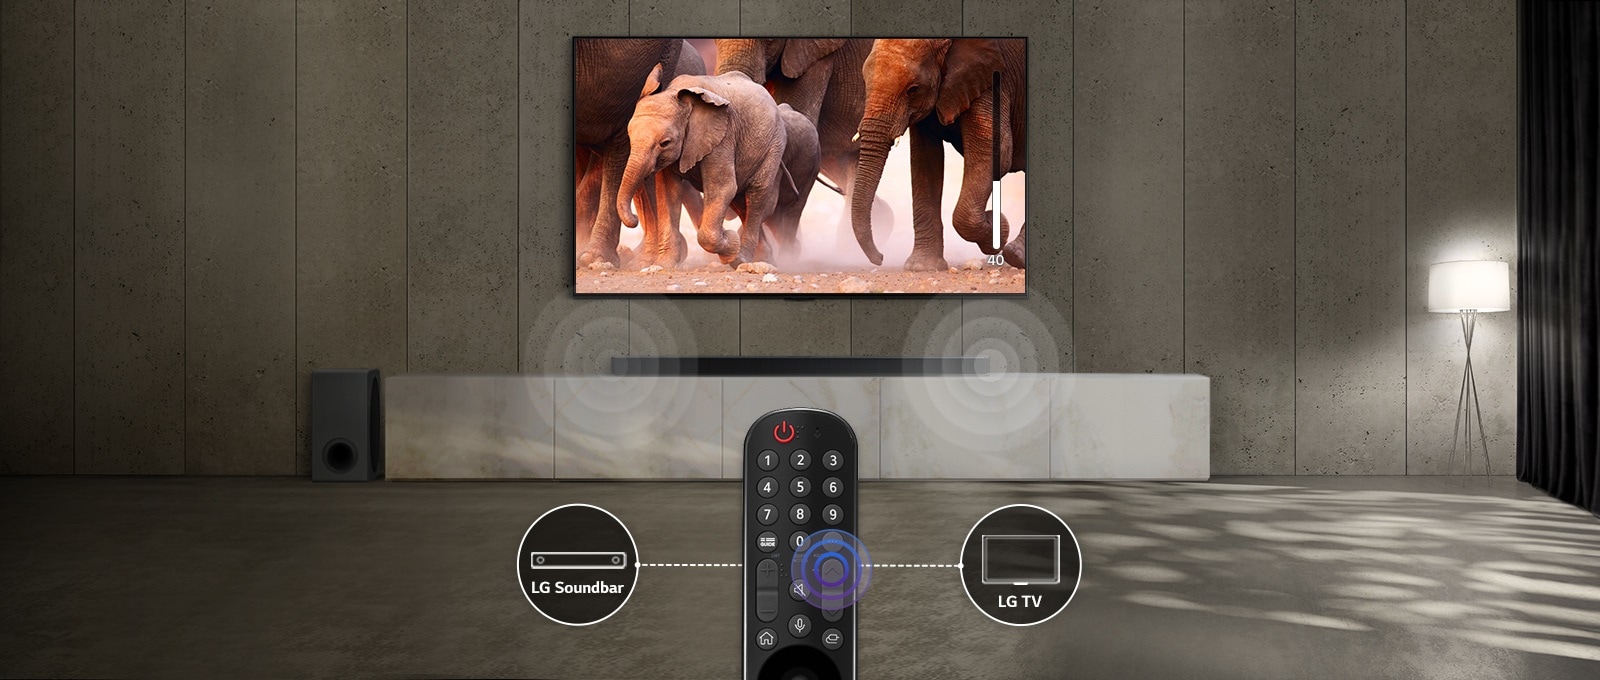 Egy finoman megvilágított szobában lévő TV képernyőjén elhaladó elefántok láthatók. A TV alatt pedig a hangprojektorból jövő hangot szimbolizáló hatás látható. A kép alsó részén egy TV-távirányító látható, és a távirányító bal, illetve jobb oldalán lévő TV és a hangprojektor ikonjai össze vannak kötve.